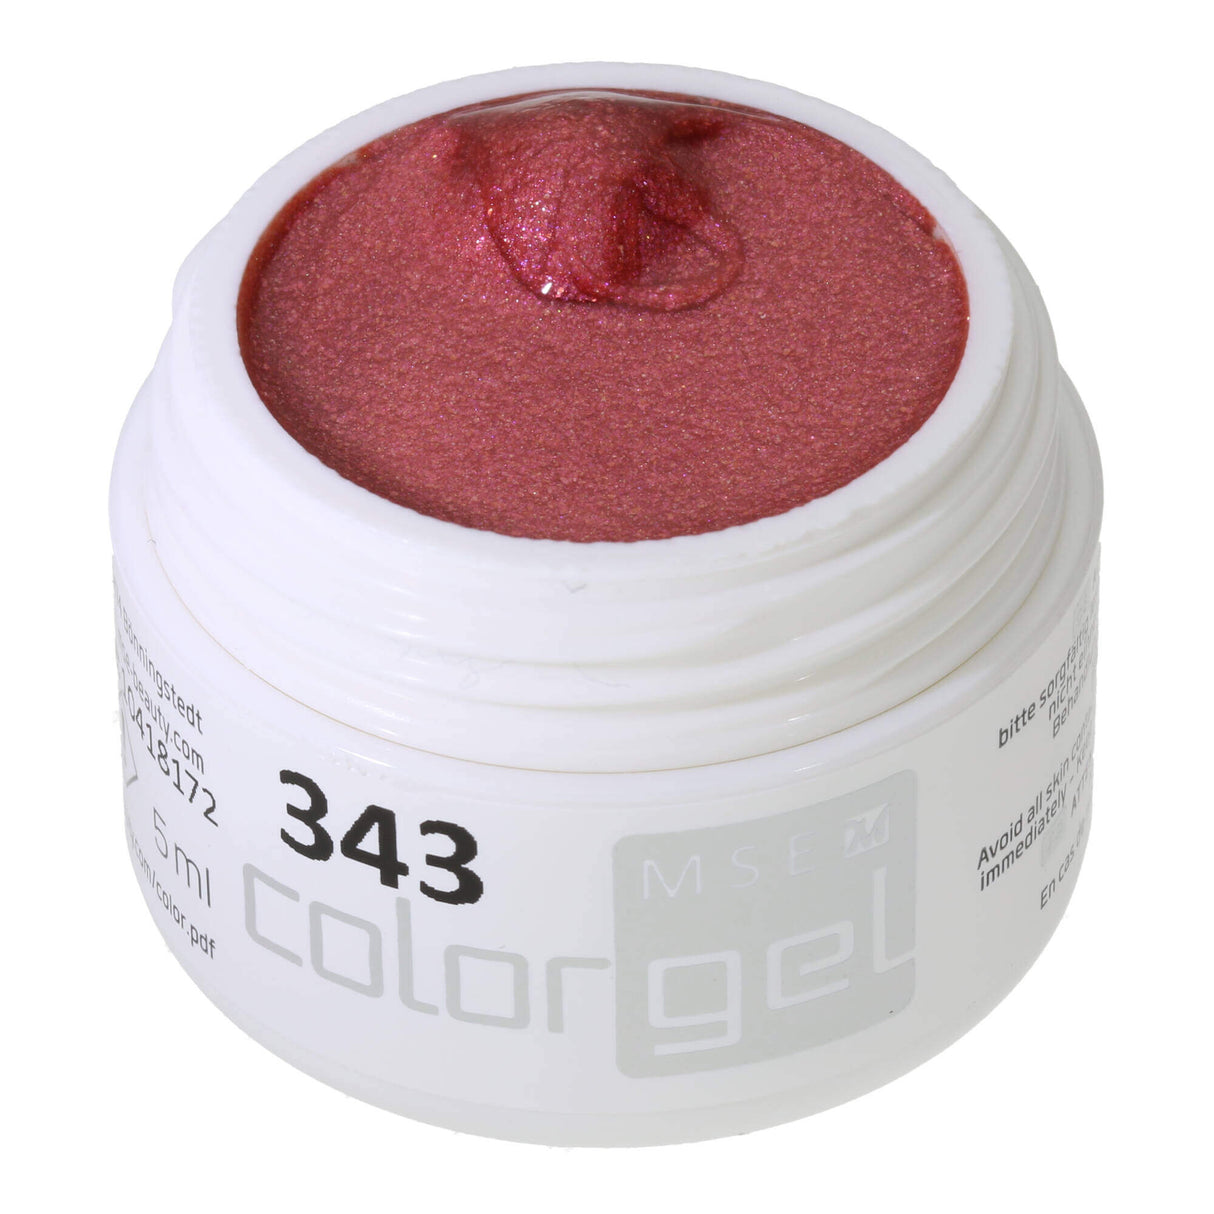 # 343 Premium-EFFEKT Color Gel 5ml Dark pink-red with a light pink-gold shimmer